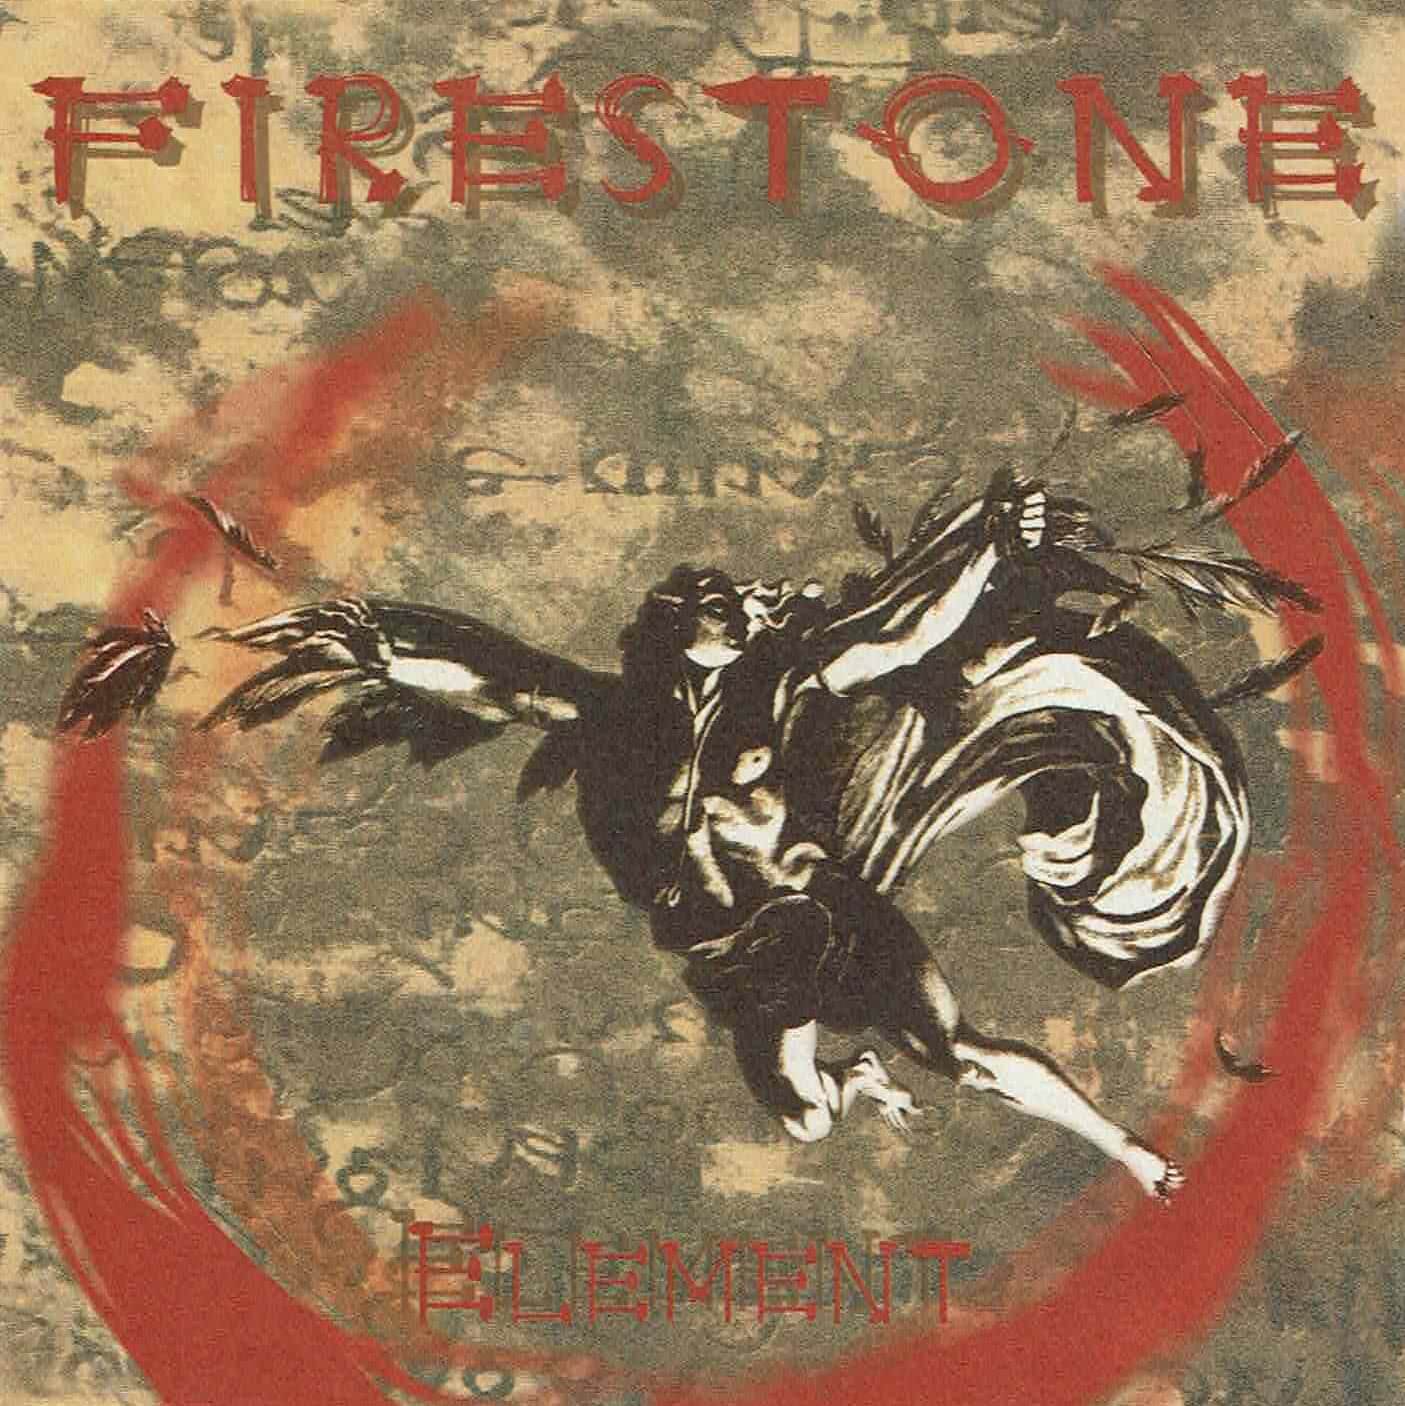 FIRESTONE 12"ep on BEIGE